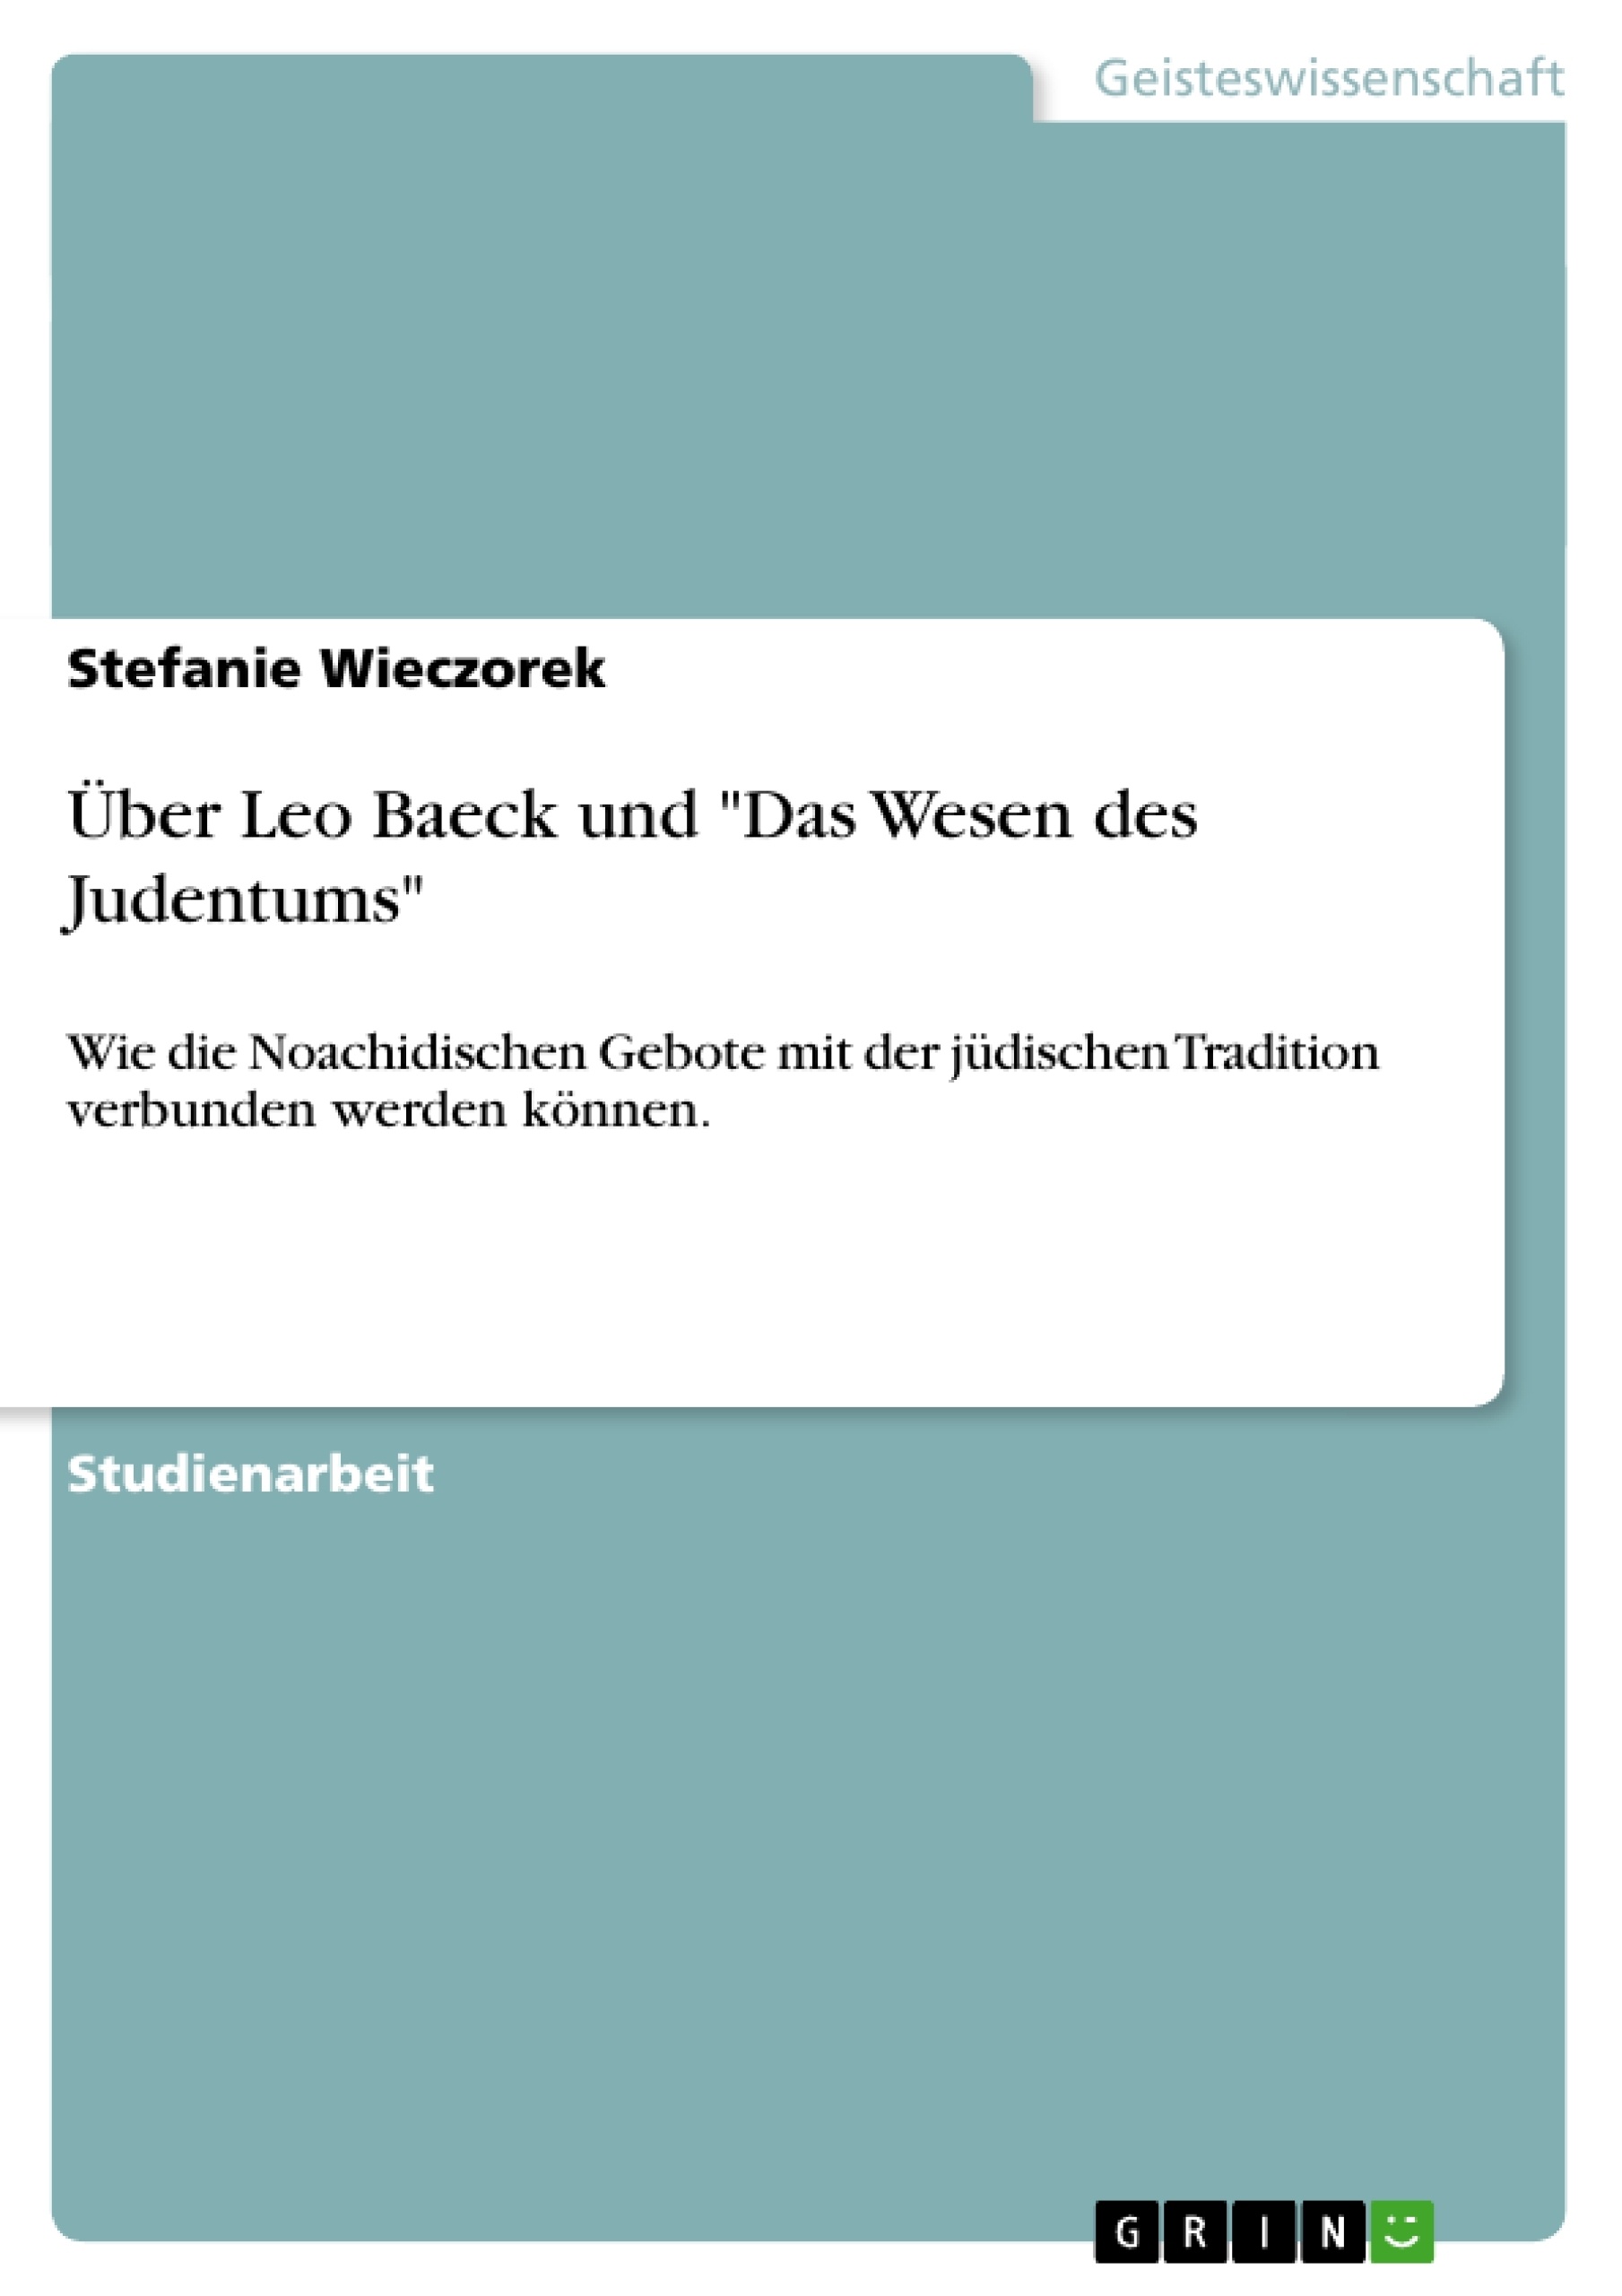 Título: Über Leo Baeck und "Das Wesen des Judentums"